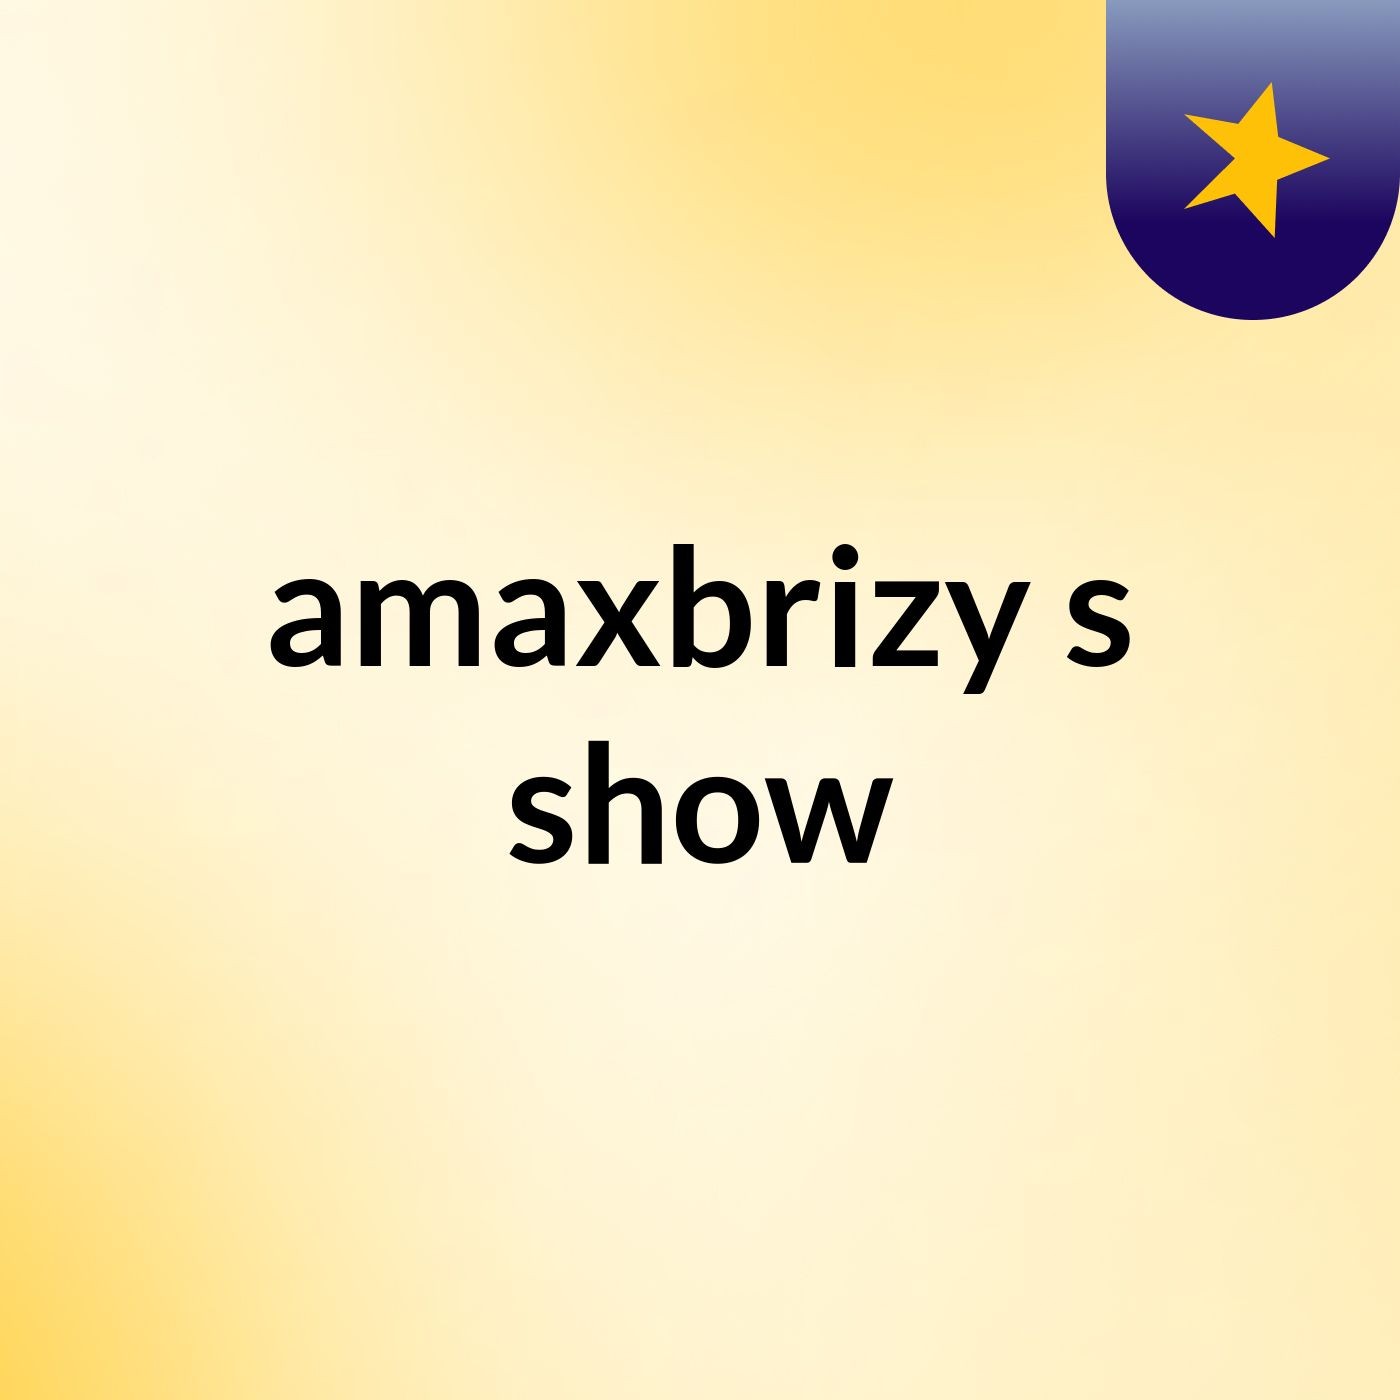 amaxbrizy's show